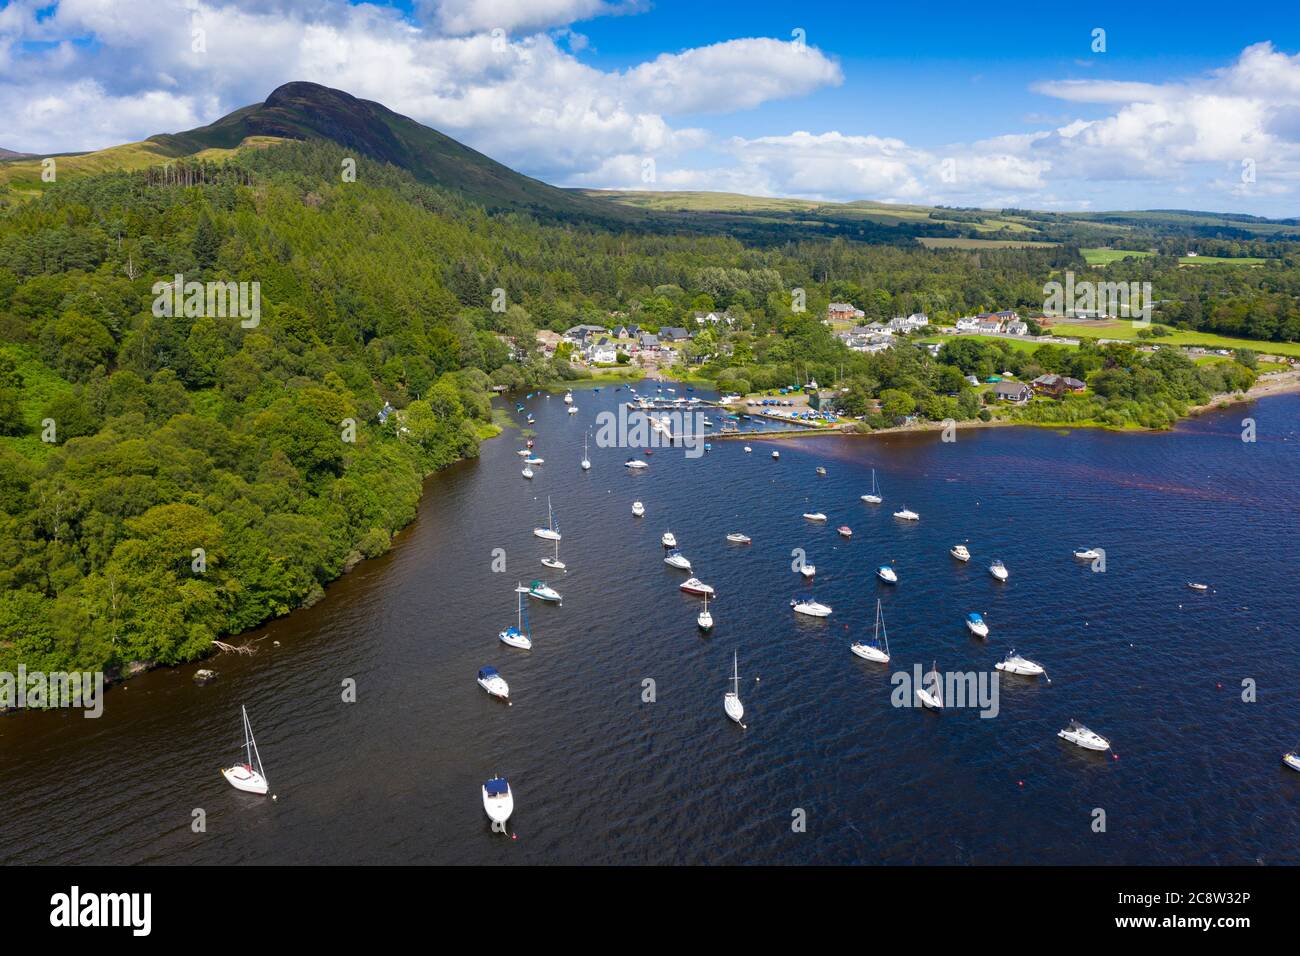 Vista aerea del villaggio di Balmaha e Conic Hill sulle rive del Loch Lomond a Loch Lomond e del Trossachs National Park, Scozia, Regno Unito Foto Stock